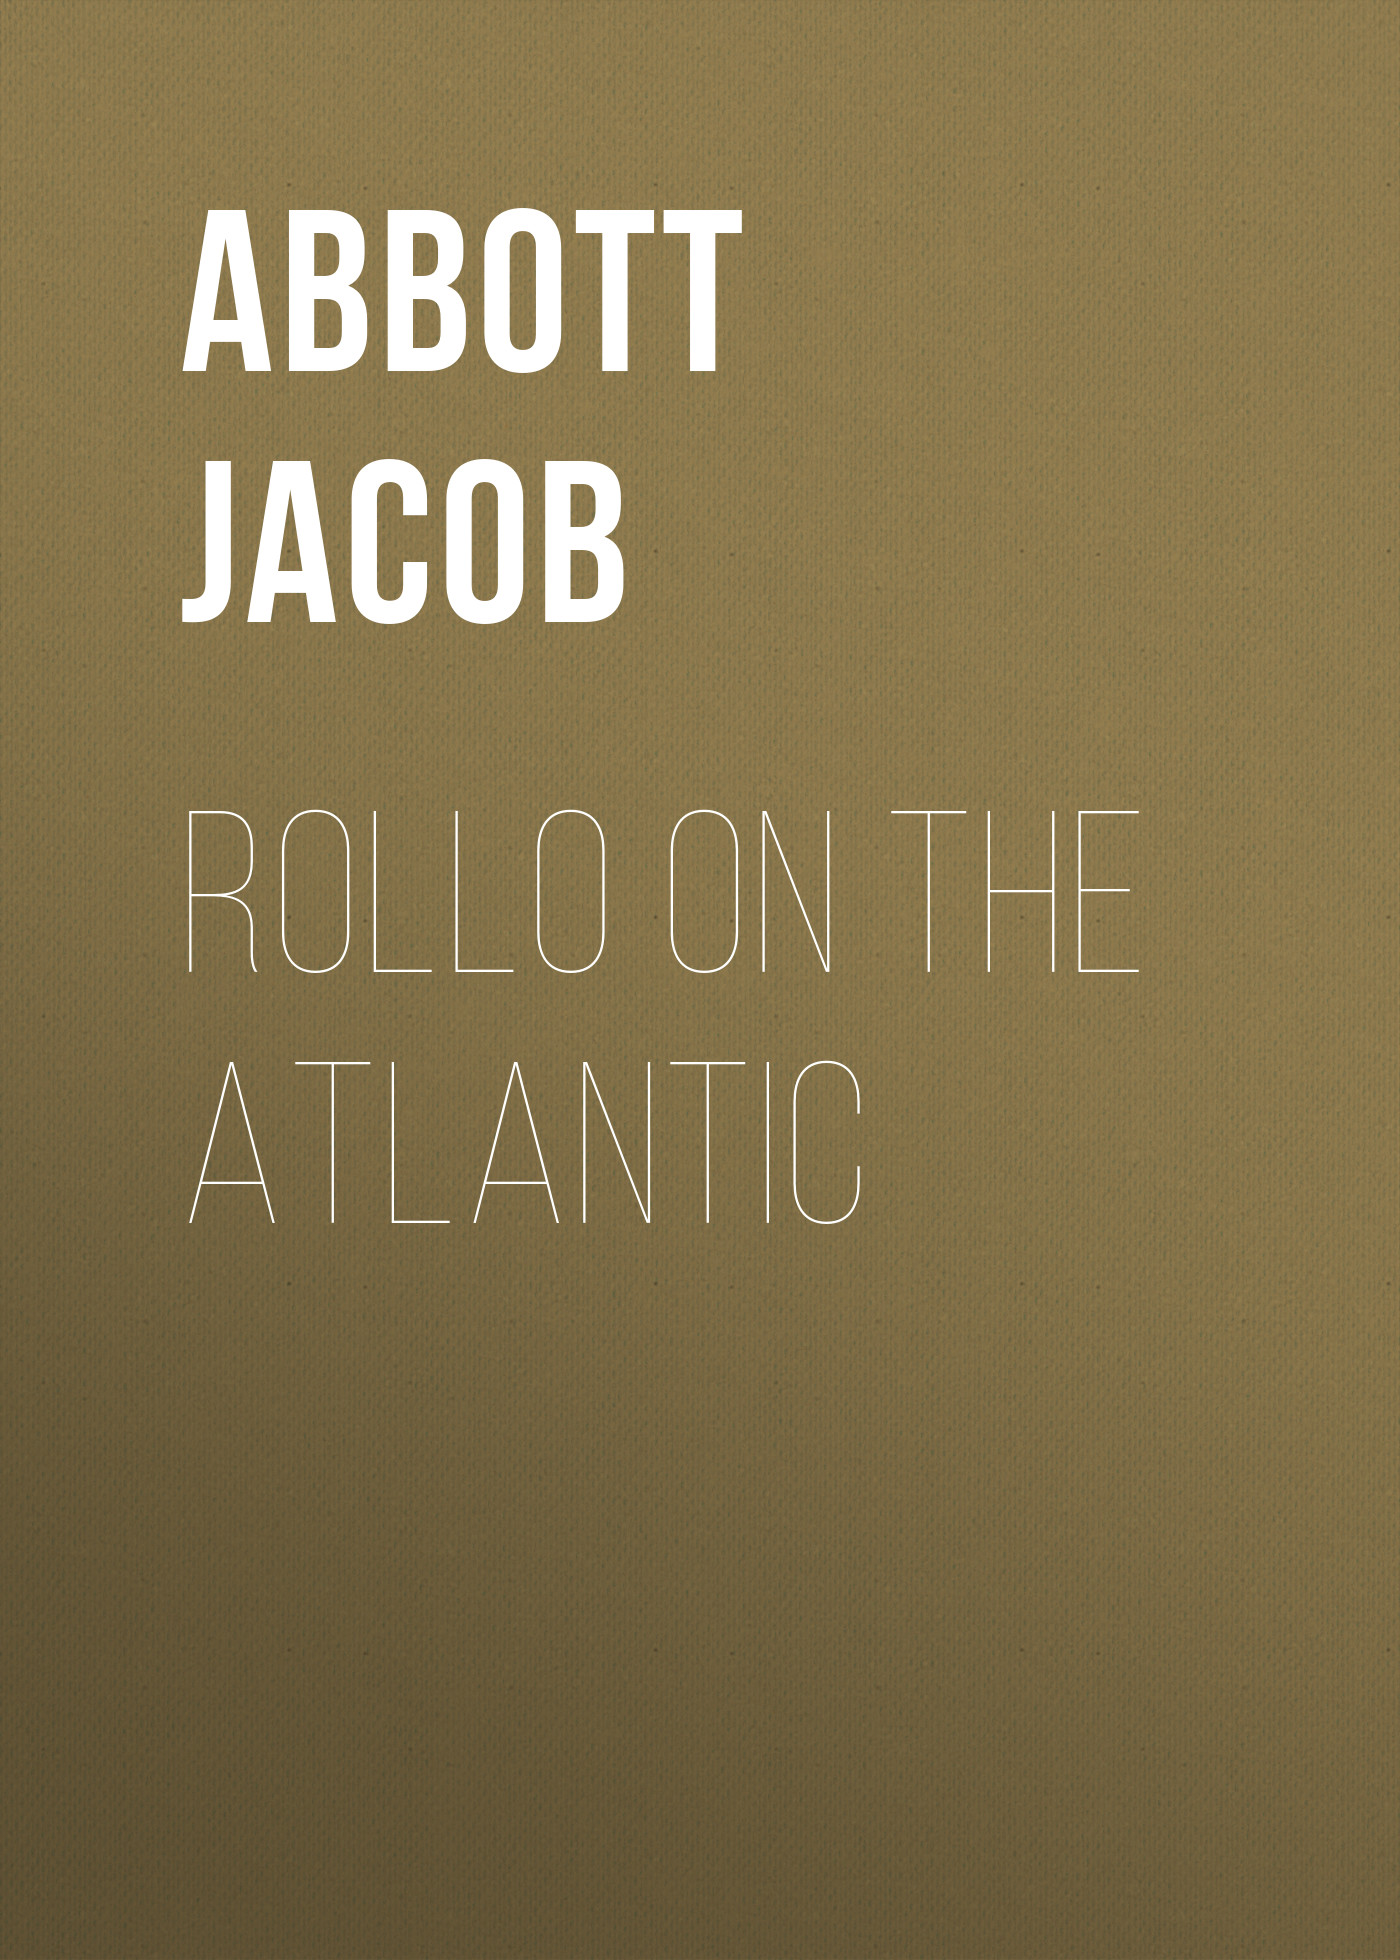 Книга Rollo on the Atlantic из серии , созданная Jacob Abbott, может относится к жанру Зарубежные детские книги, Литература 19 века, Зарубежная старинная литература, Зарубежная классика. Стоимость электронной книги Rollo on the Atlantic с идентификатором 36364166 составляет 0 руб.